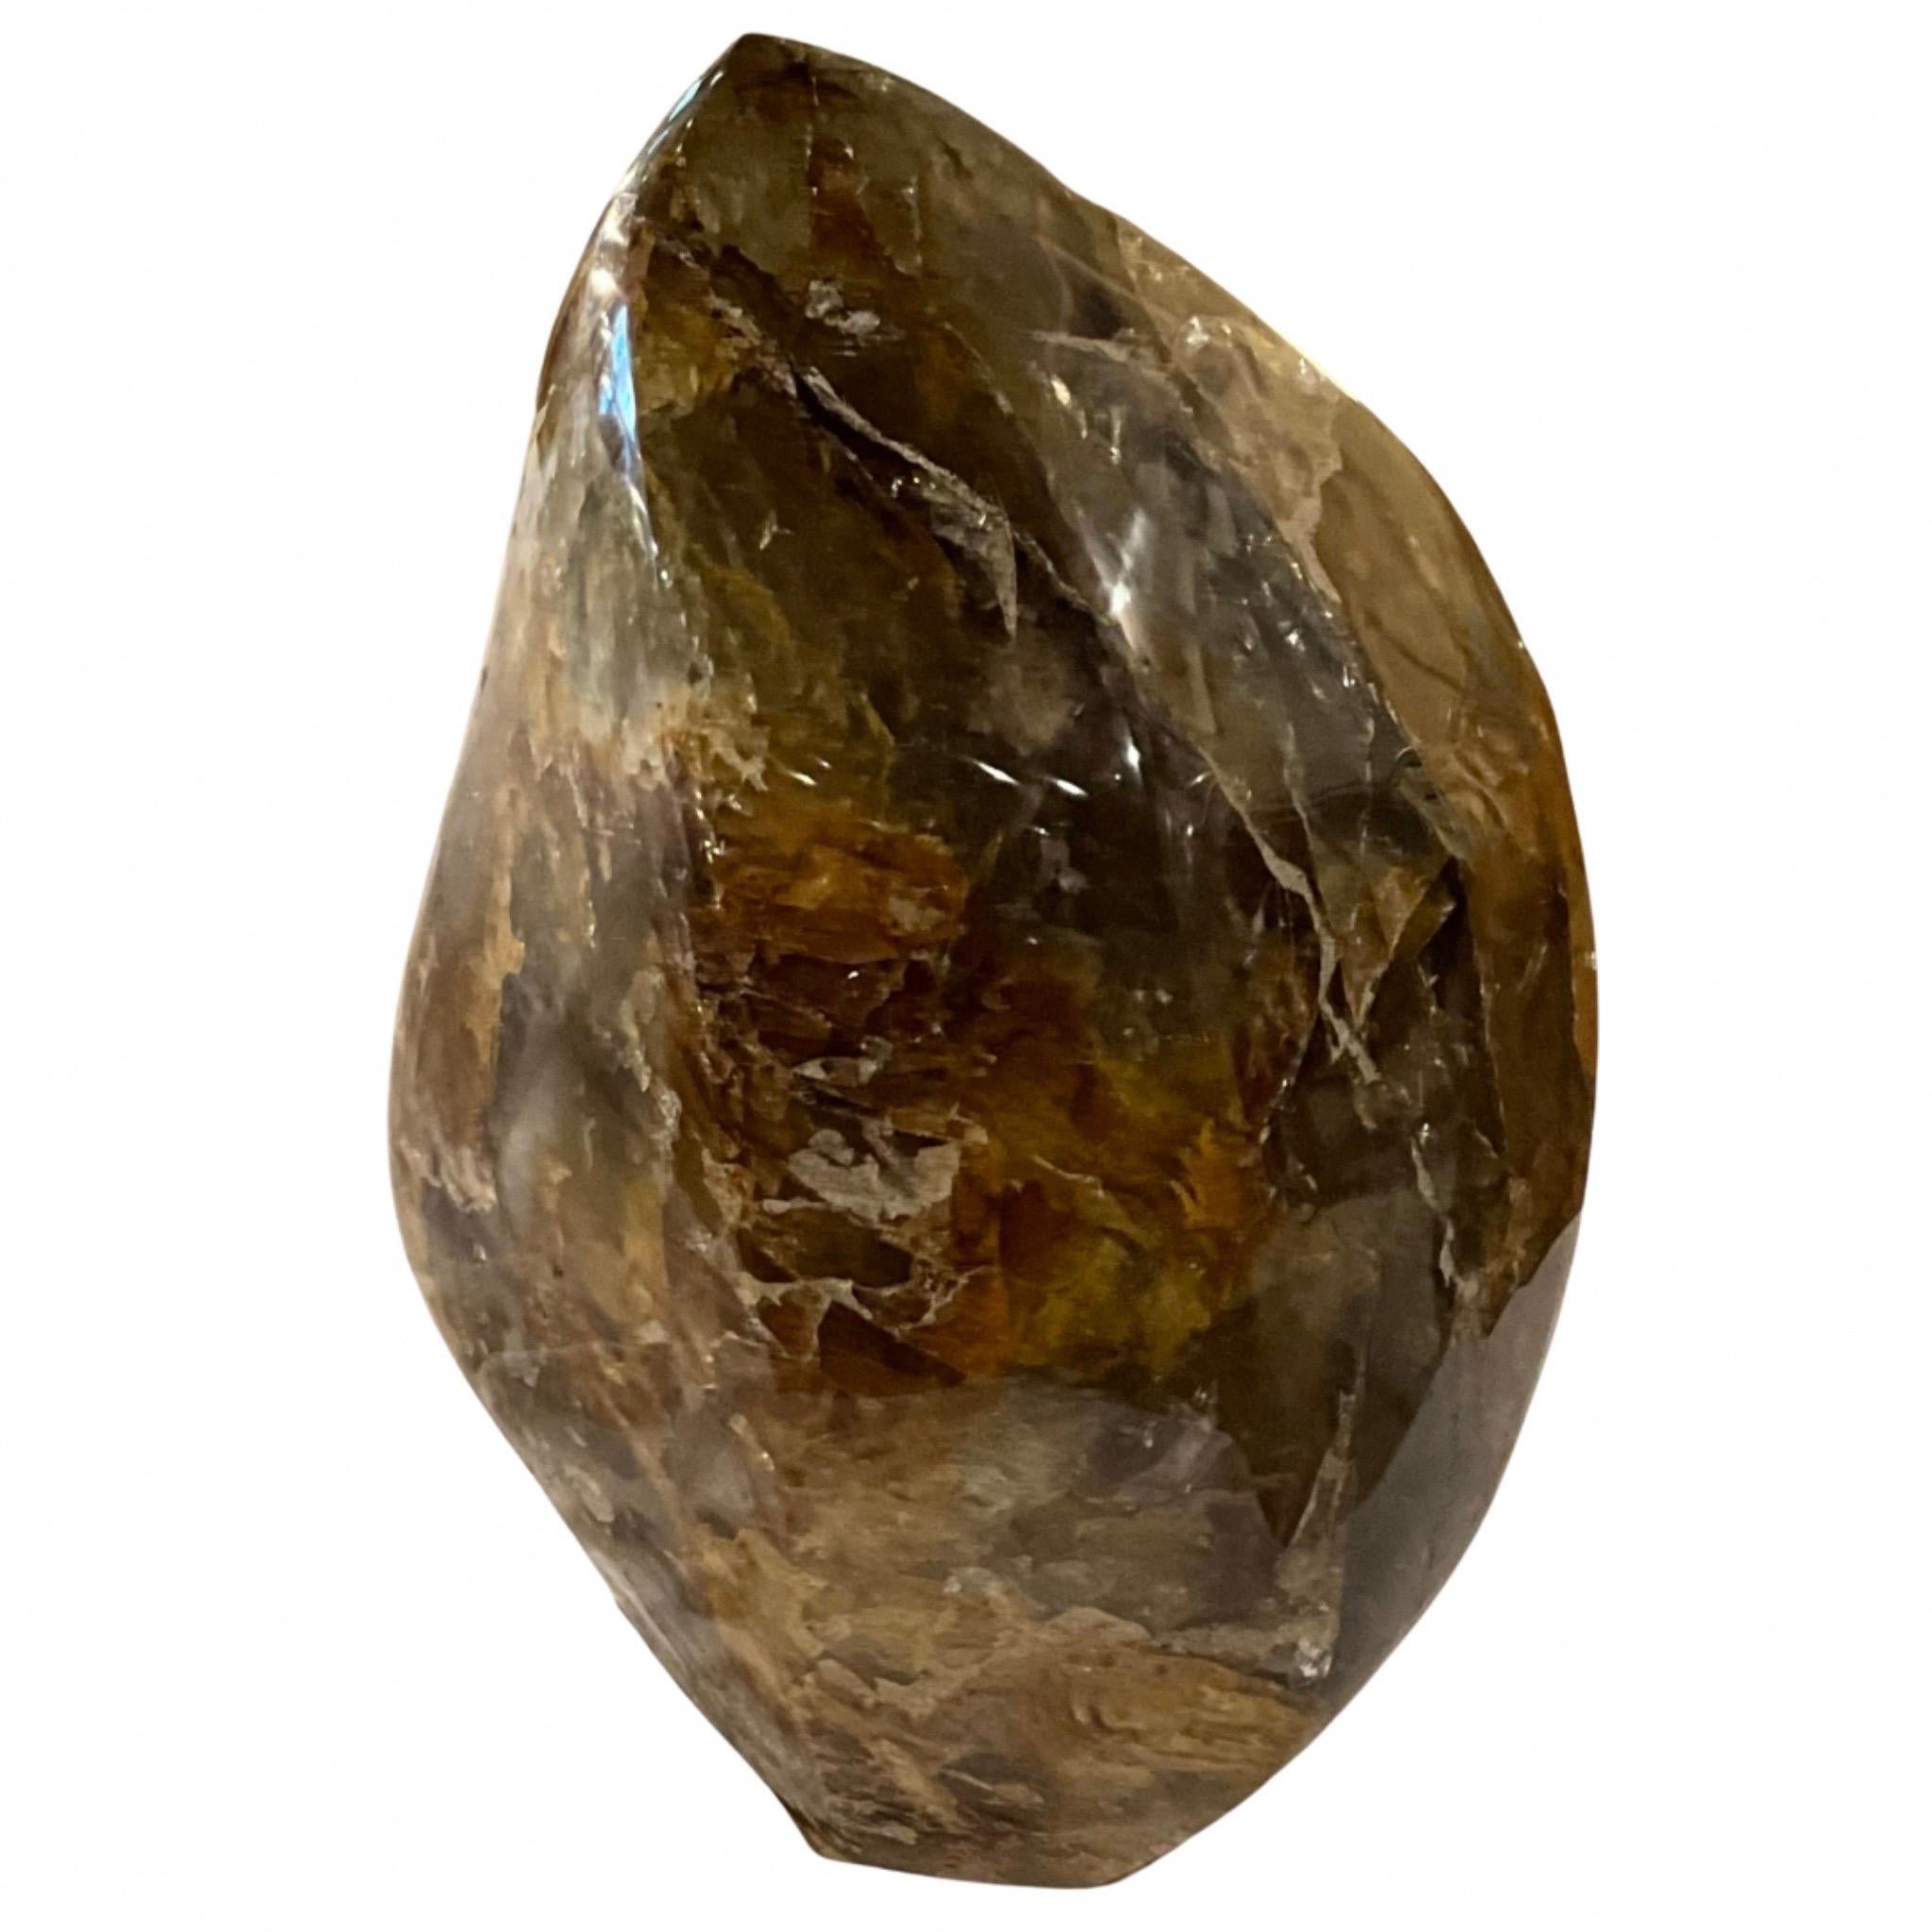 Extra groß, freistehend. 
Geschliffener Quarzkristall mit Hämatit.
Aus Brasilien.
Die Gesamttöne sind Braun, Sand, Honig, Tiefgelb und Beige.
158 LBS (Erfordert spezielle Lieferung und Platzierung).
Prähistorisch.